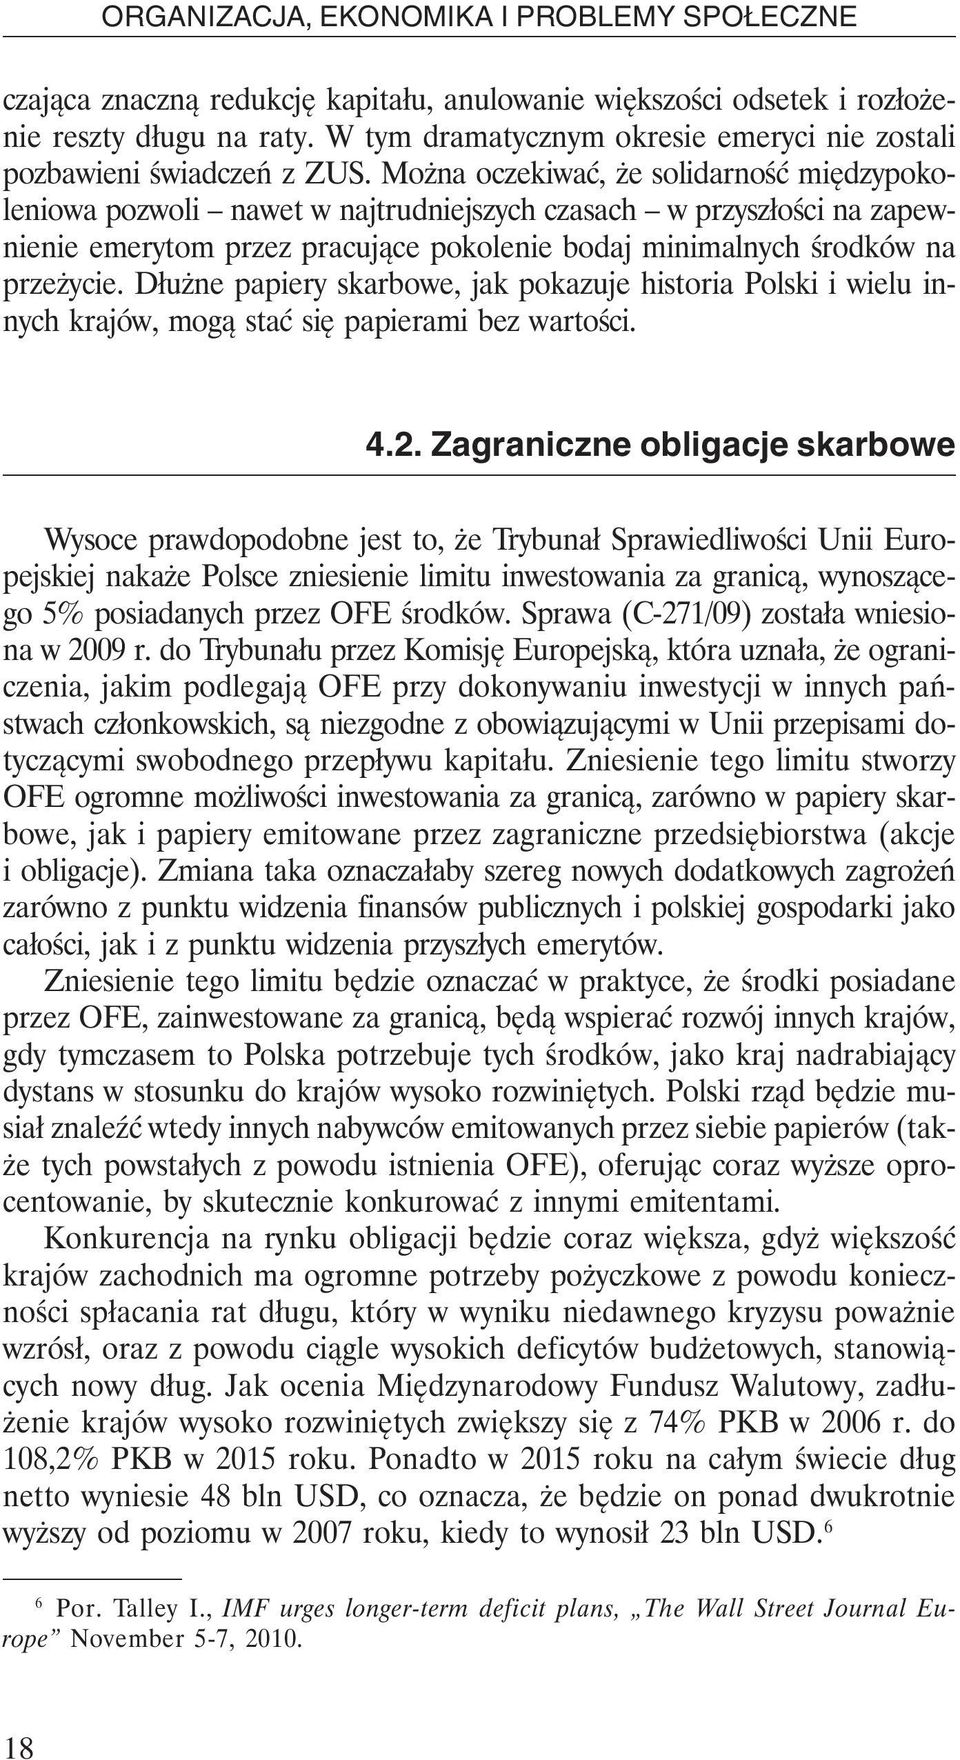 Dłużne papiery skarbowe, jak pokazuje historia Polski i wielu innych krajów, mogą stać się papierami bez wartości. 4.2.